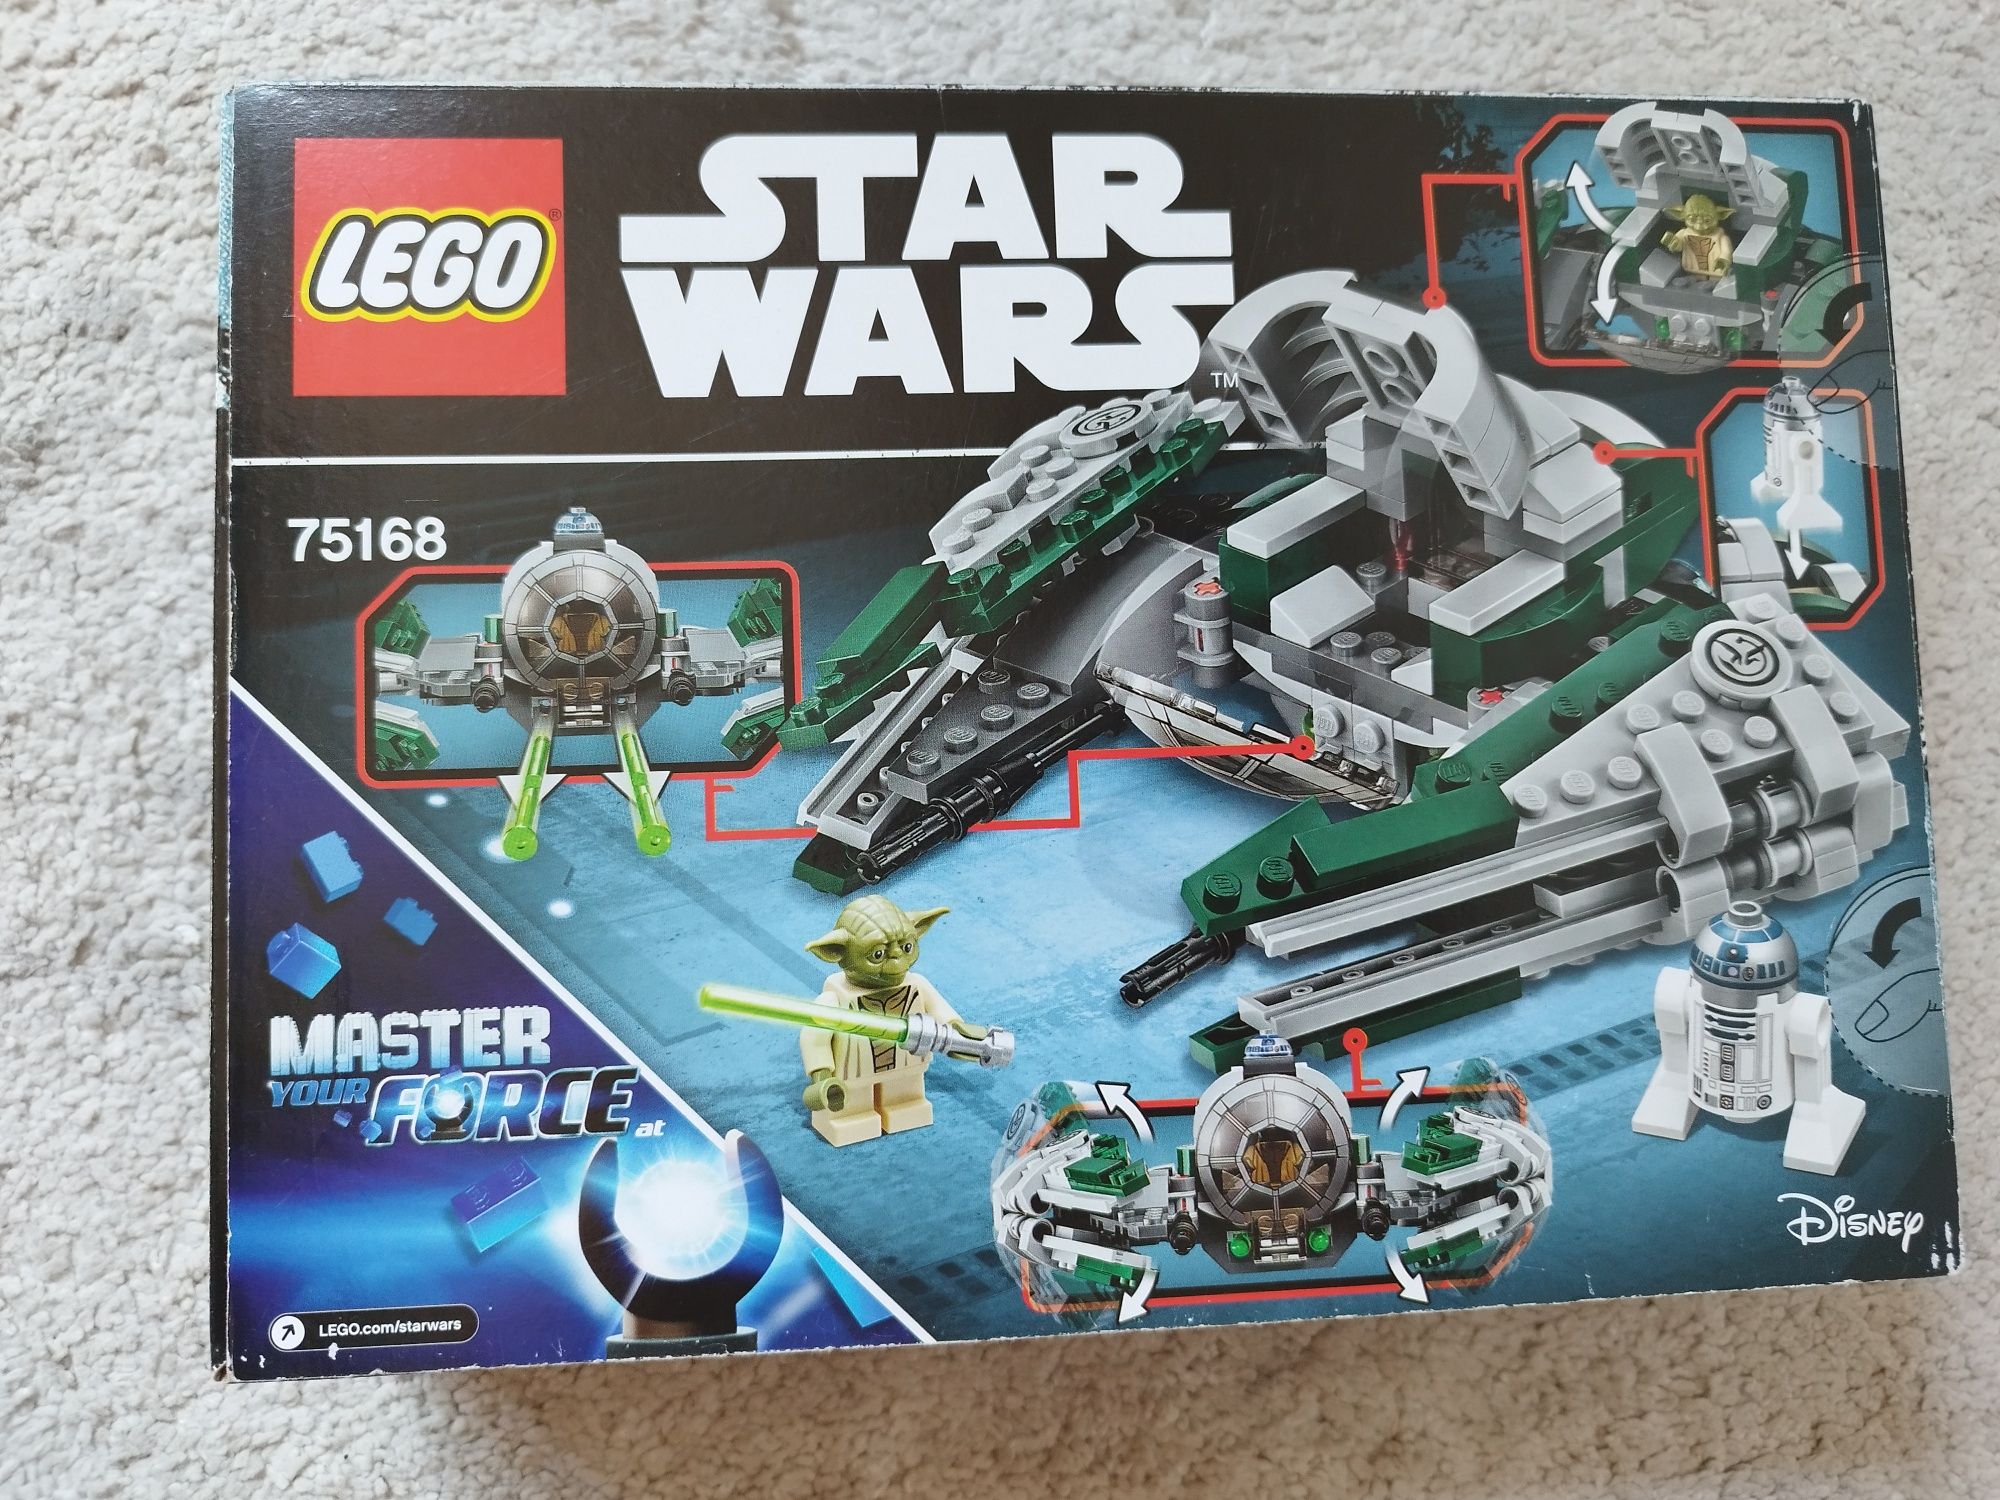 75168: Yoda's Jedi Starfighter
75168: Yoda's Jedi StarfighterPeso: 36,